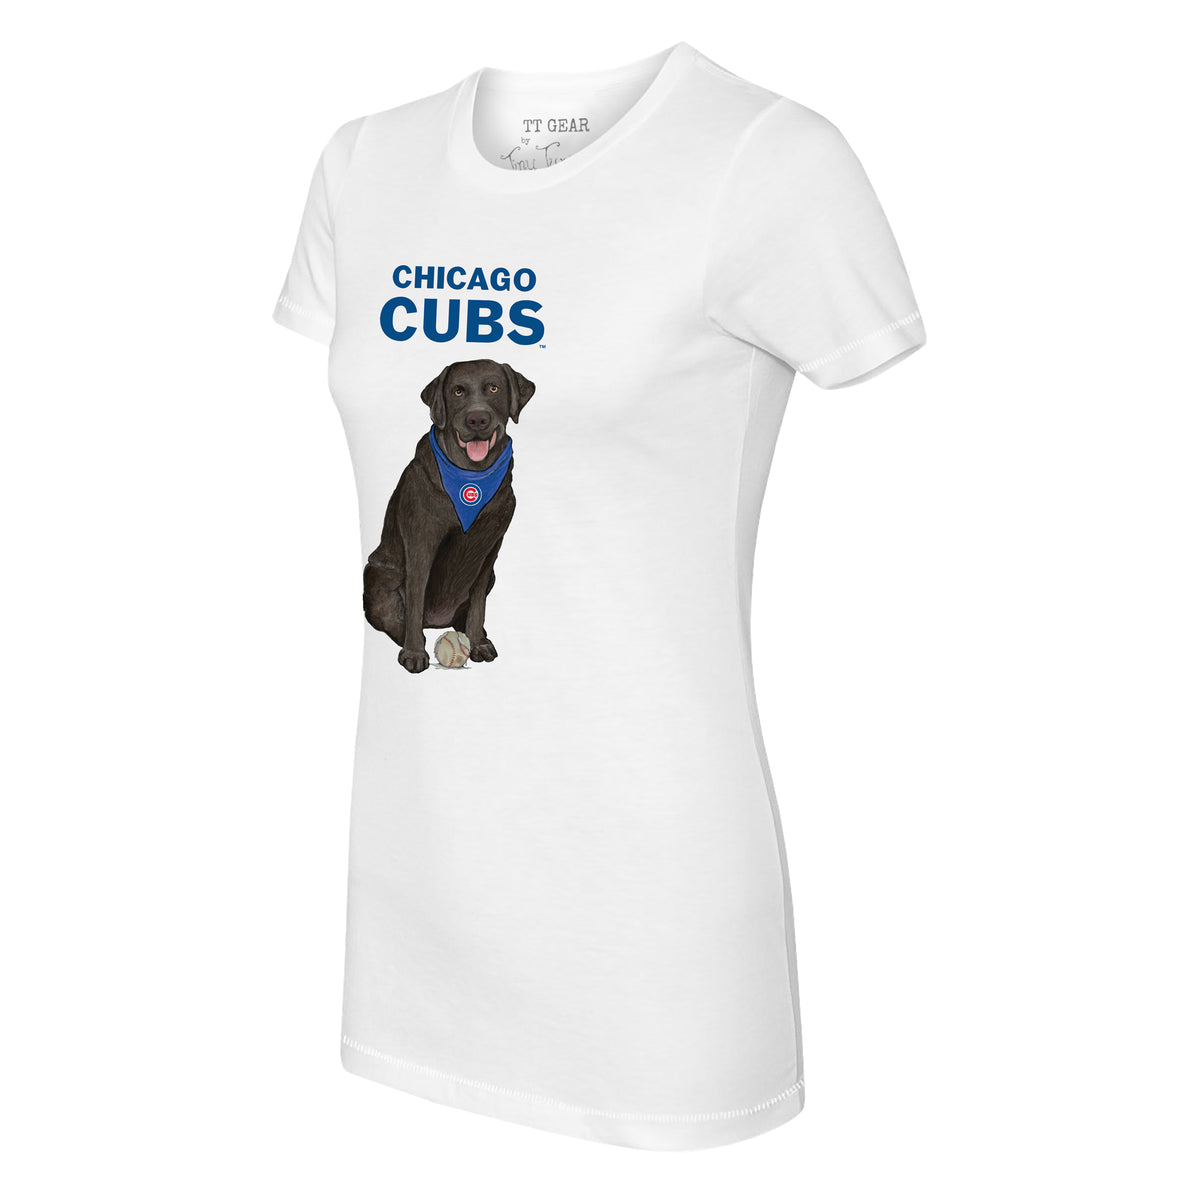 Chicago Cubs Black Labrador Retriever Tee Shirt